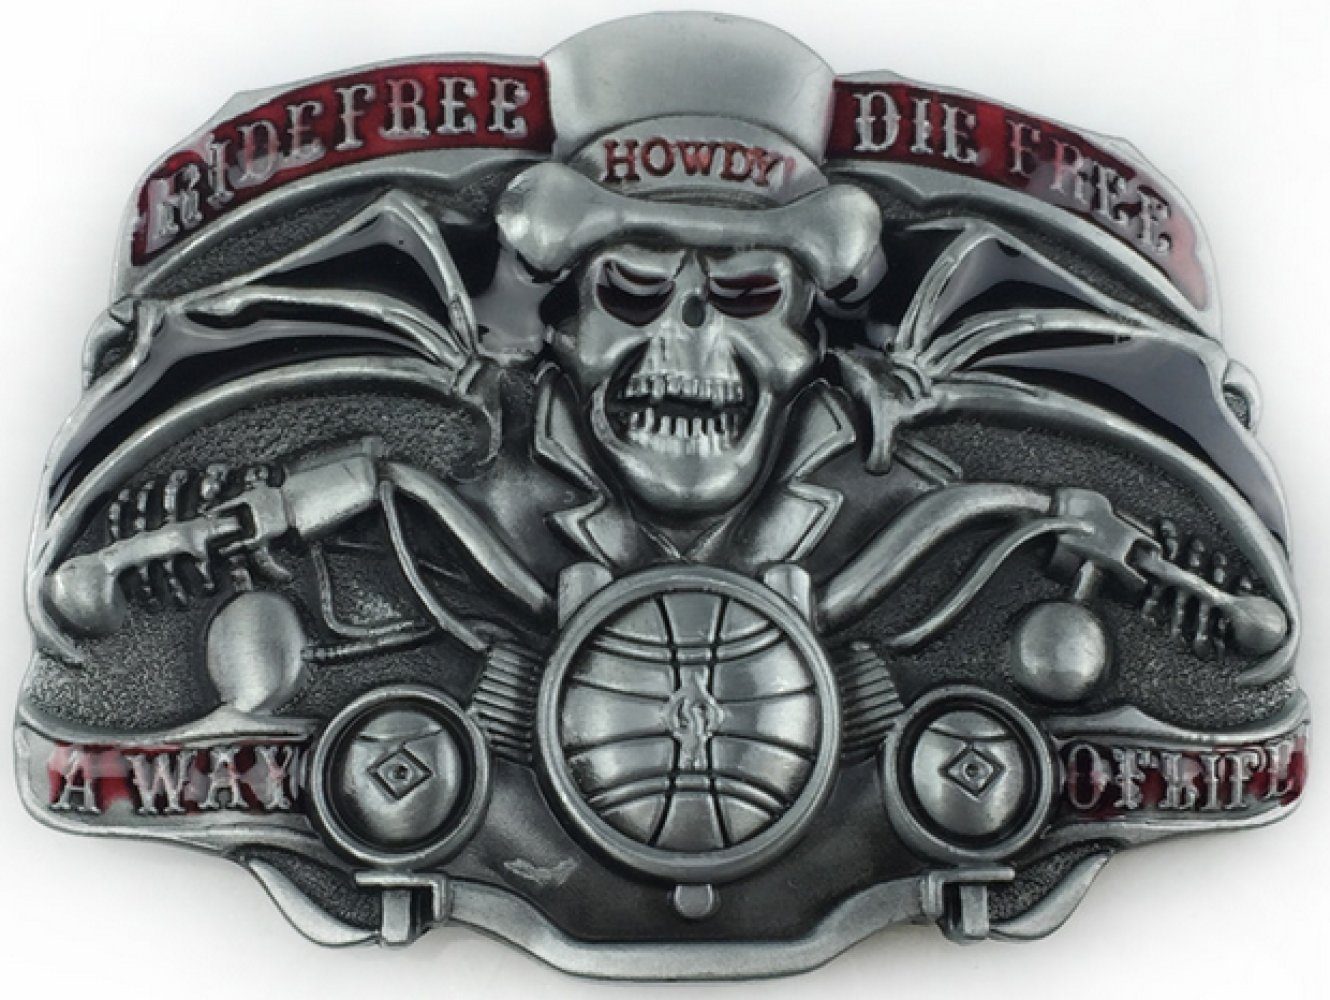 Ware aus aller Welt Gürtelschnalle Skull Totenkopf Motorrad Biker Gürtelschließe Wechselschnalle Buckle